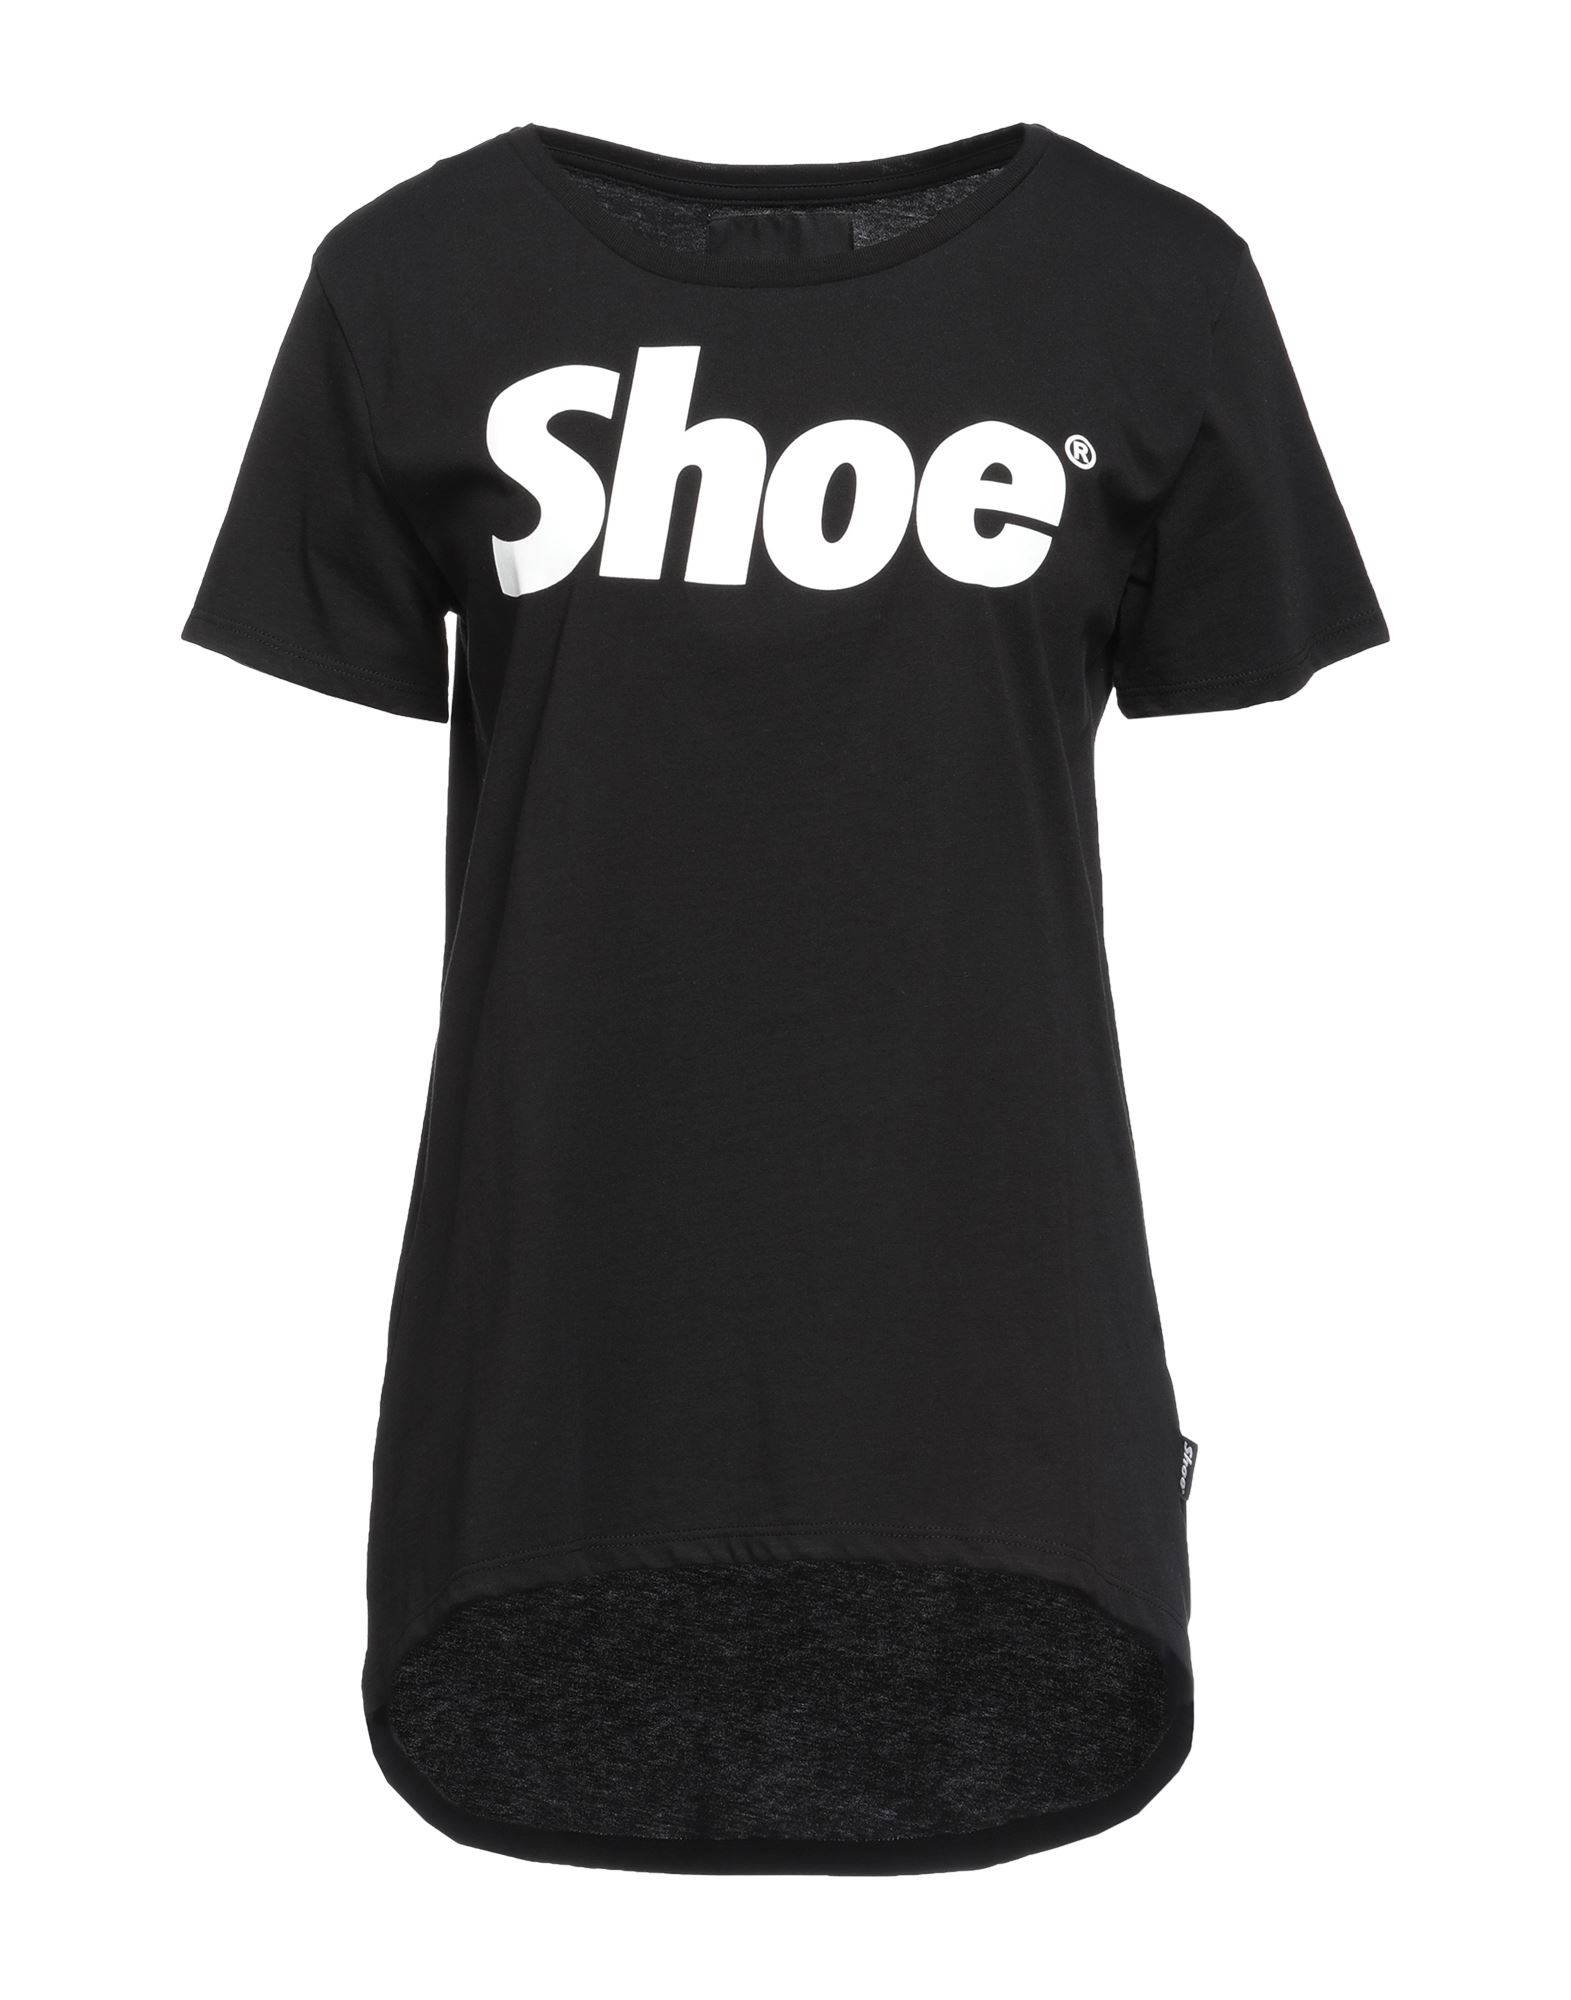 Shoe® Shoe Woman T-shirt Black Size Xs Cotton